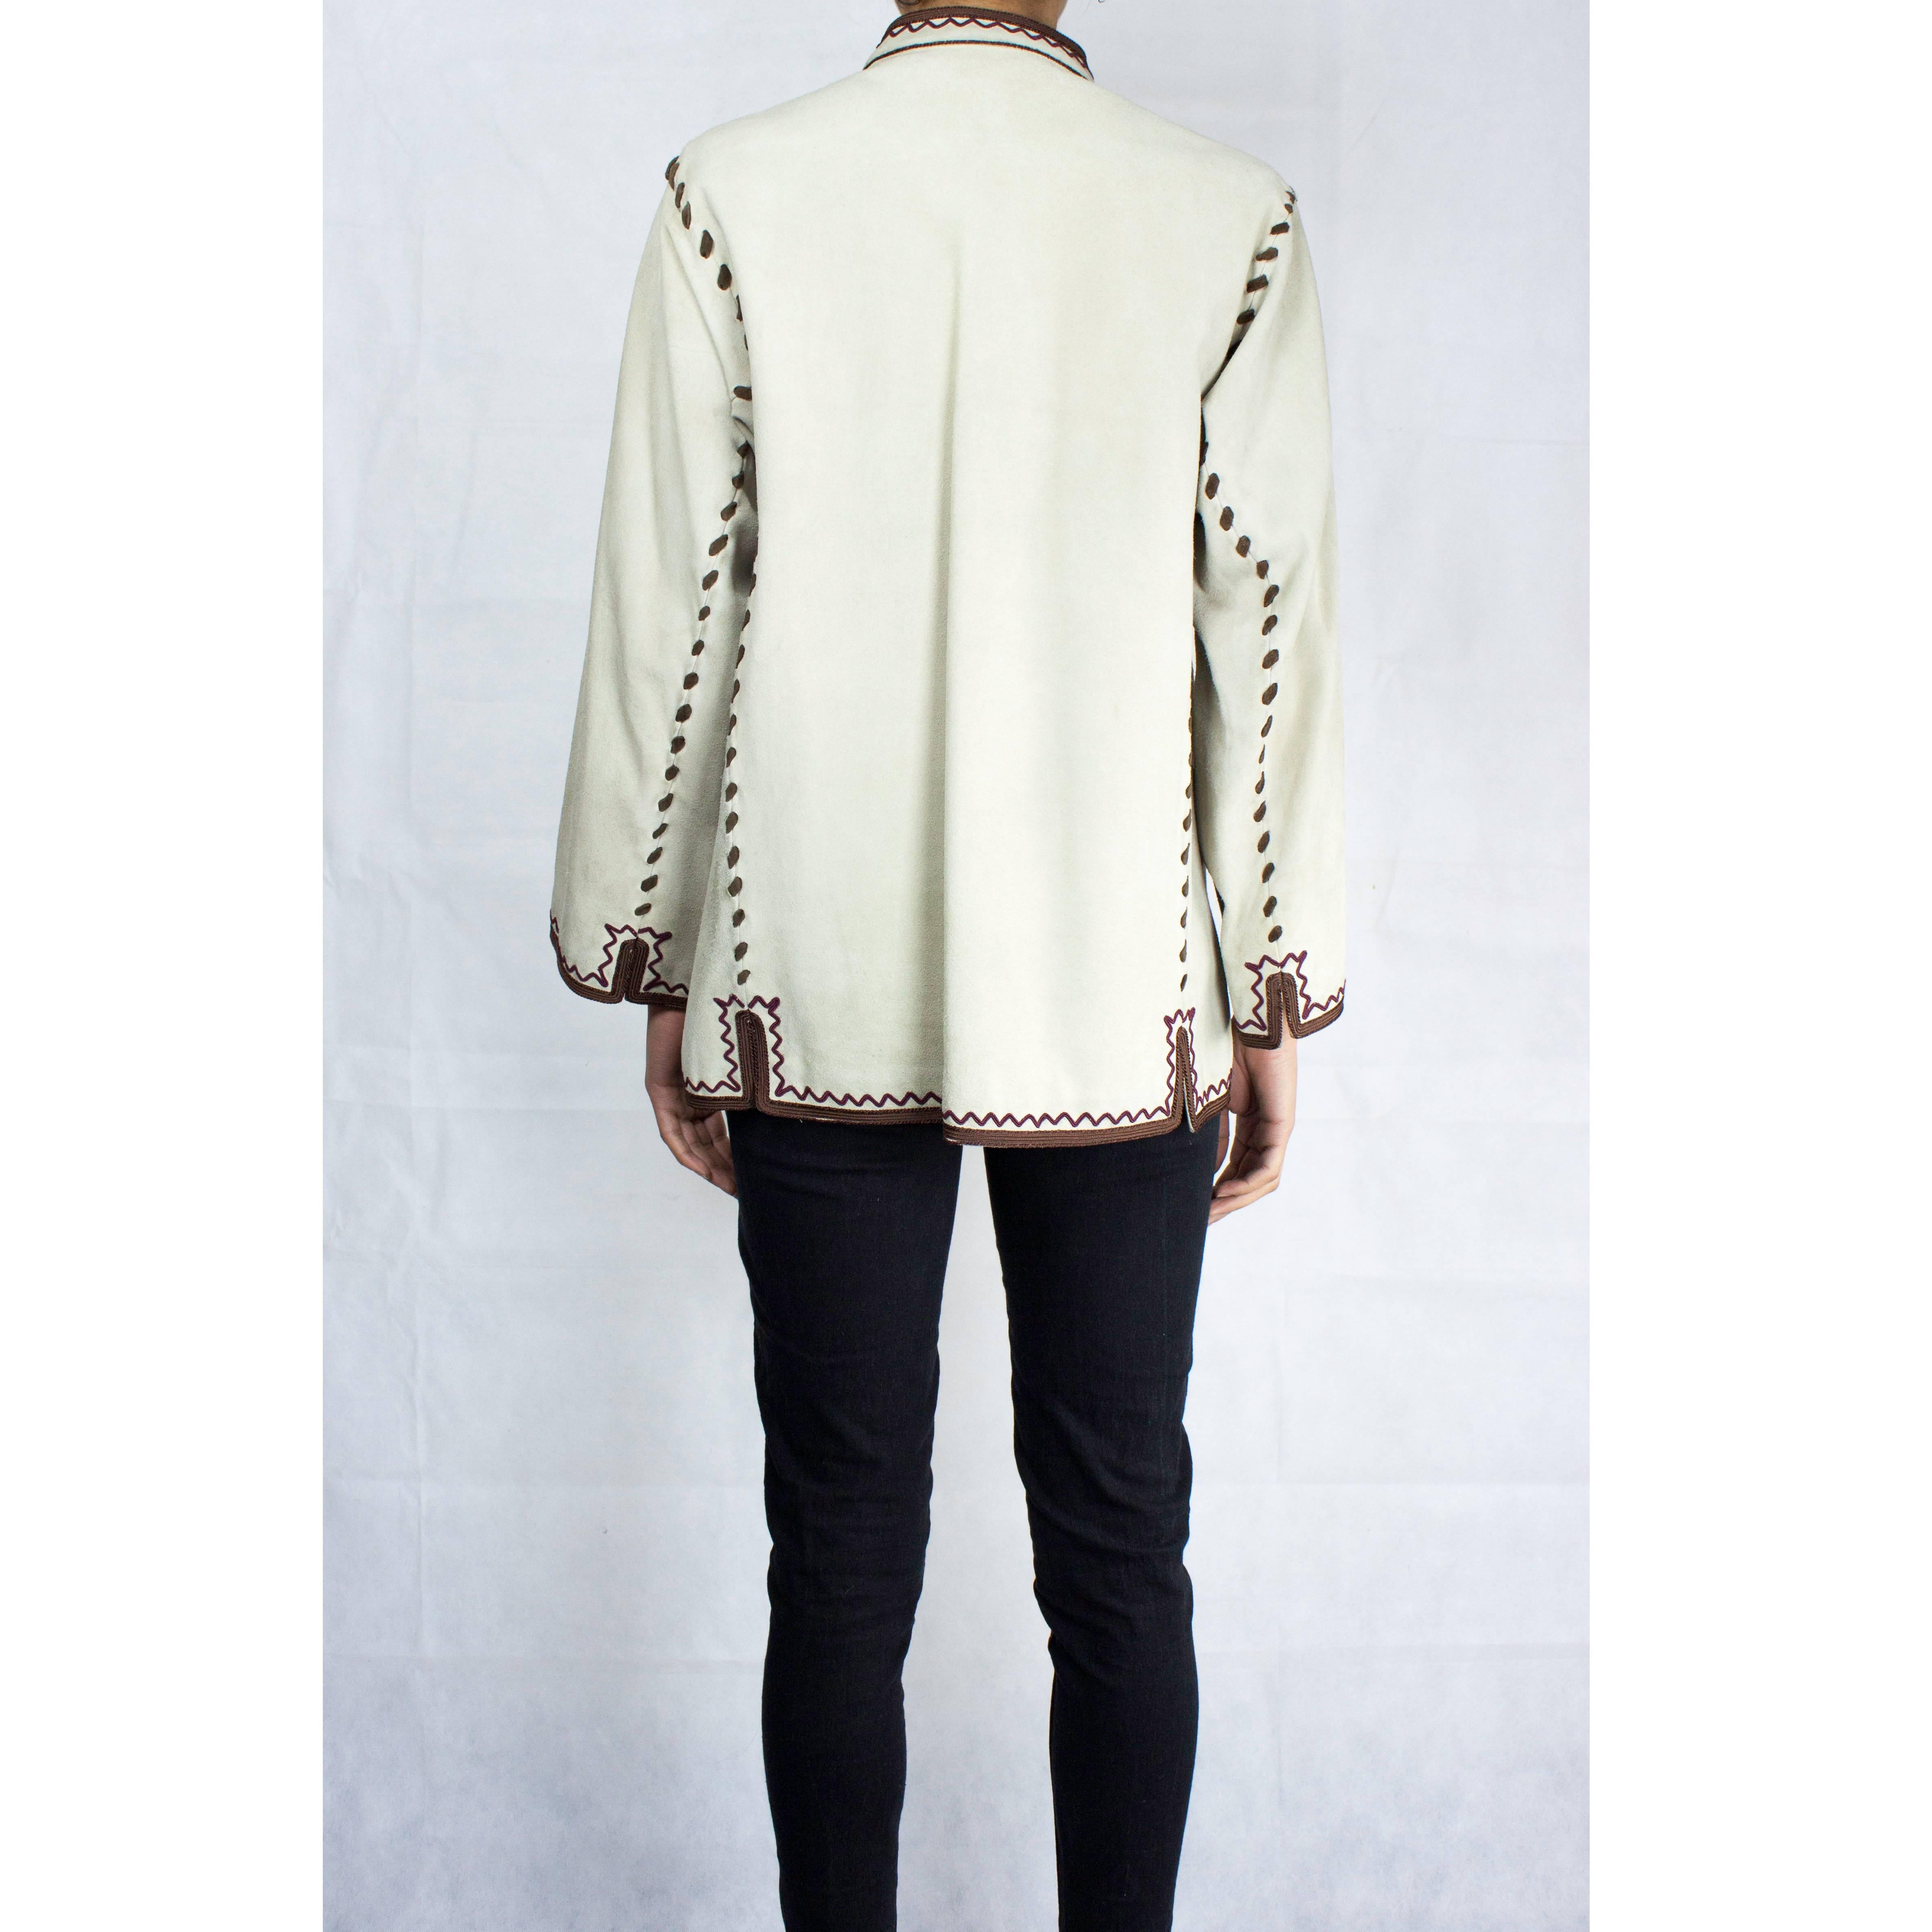 Women's Yves Saint Laurent suede Cossack inspired jacket, circa 1976